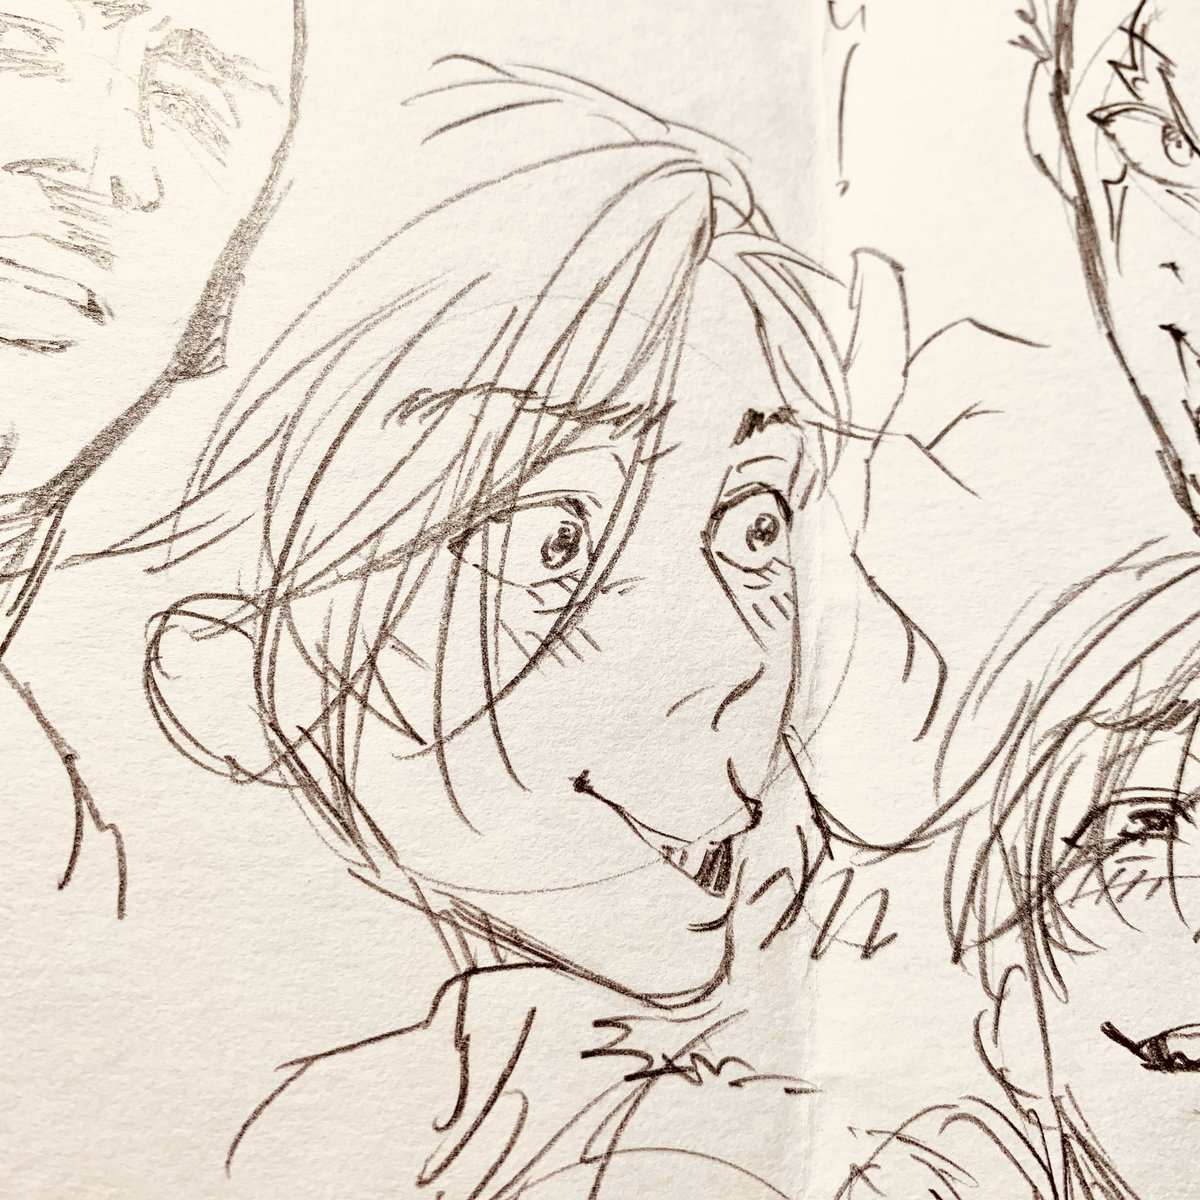 そう言えば今回の和田の顔、実はフルーツオブライフの表情集を描いたスケッチブックにある「リッキーが人をおちょくるときの顔」から取ってきました。

顔が整ってるのに、わざわざ変な顔する子って大好きです? 